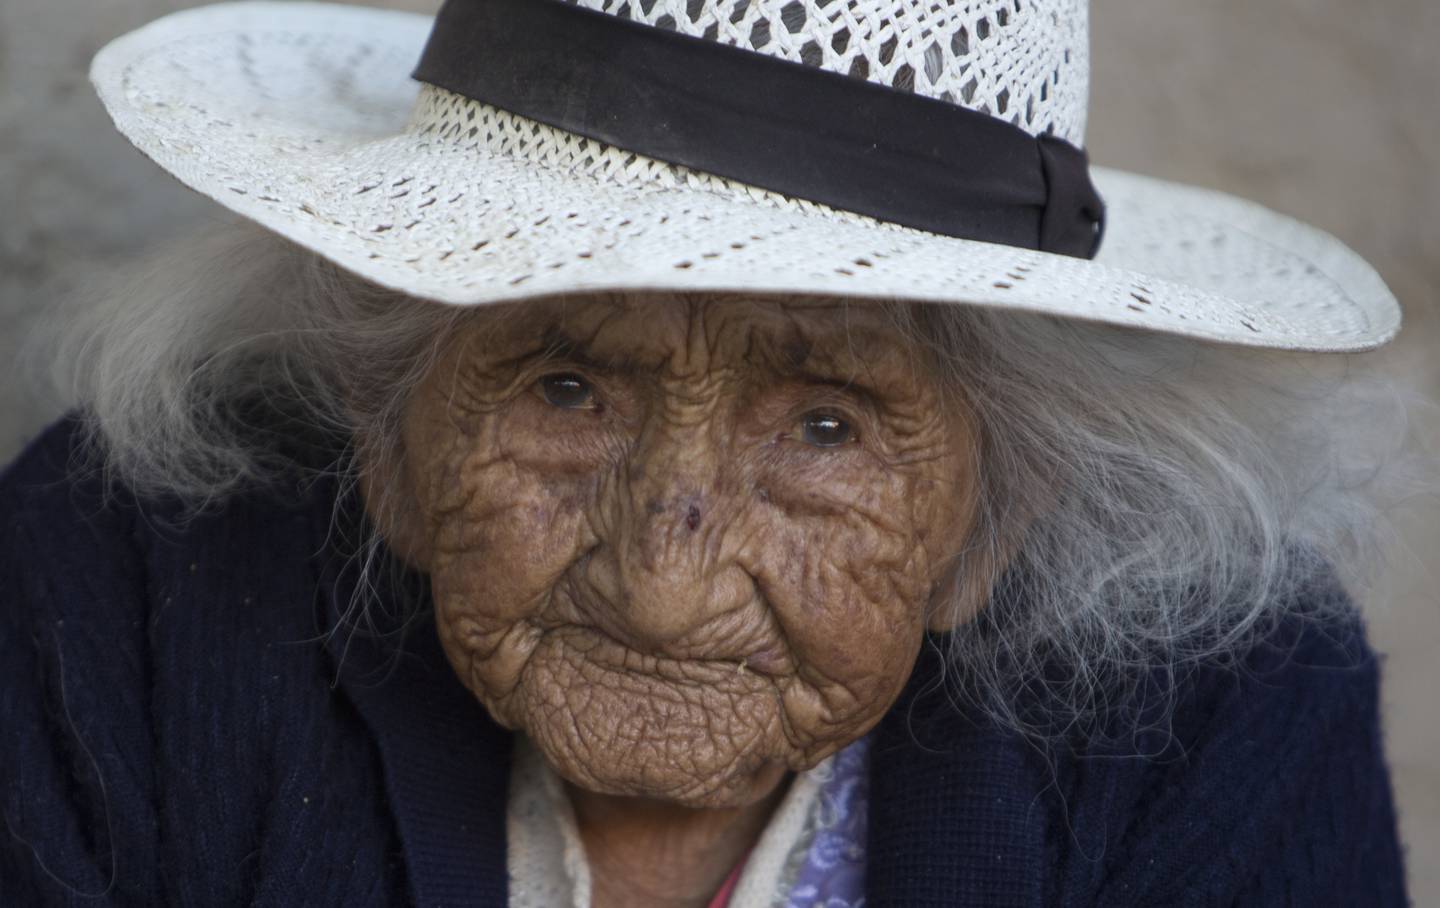 På dette bildet fra 23. august 2018 ser 117 år gamle Julia Flores Colque inn i kameraet mens hun sitter utenfor hjemmet sitt i Sacaba i Bolivia. Ifølge det nasjonale identitetskortet hennes ble Flores Colque født 26. oktober 1900 i en gruveleir i de bolivianske fjellene. Med sine 117 år og drøyt 10 måneder er hun den eldste kvinnen i Andeslandet og kanskje den eldste nålevende personen i verden.